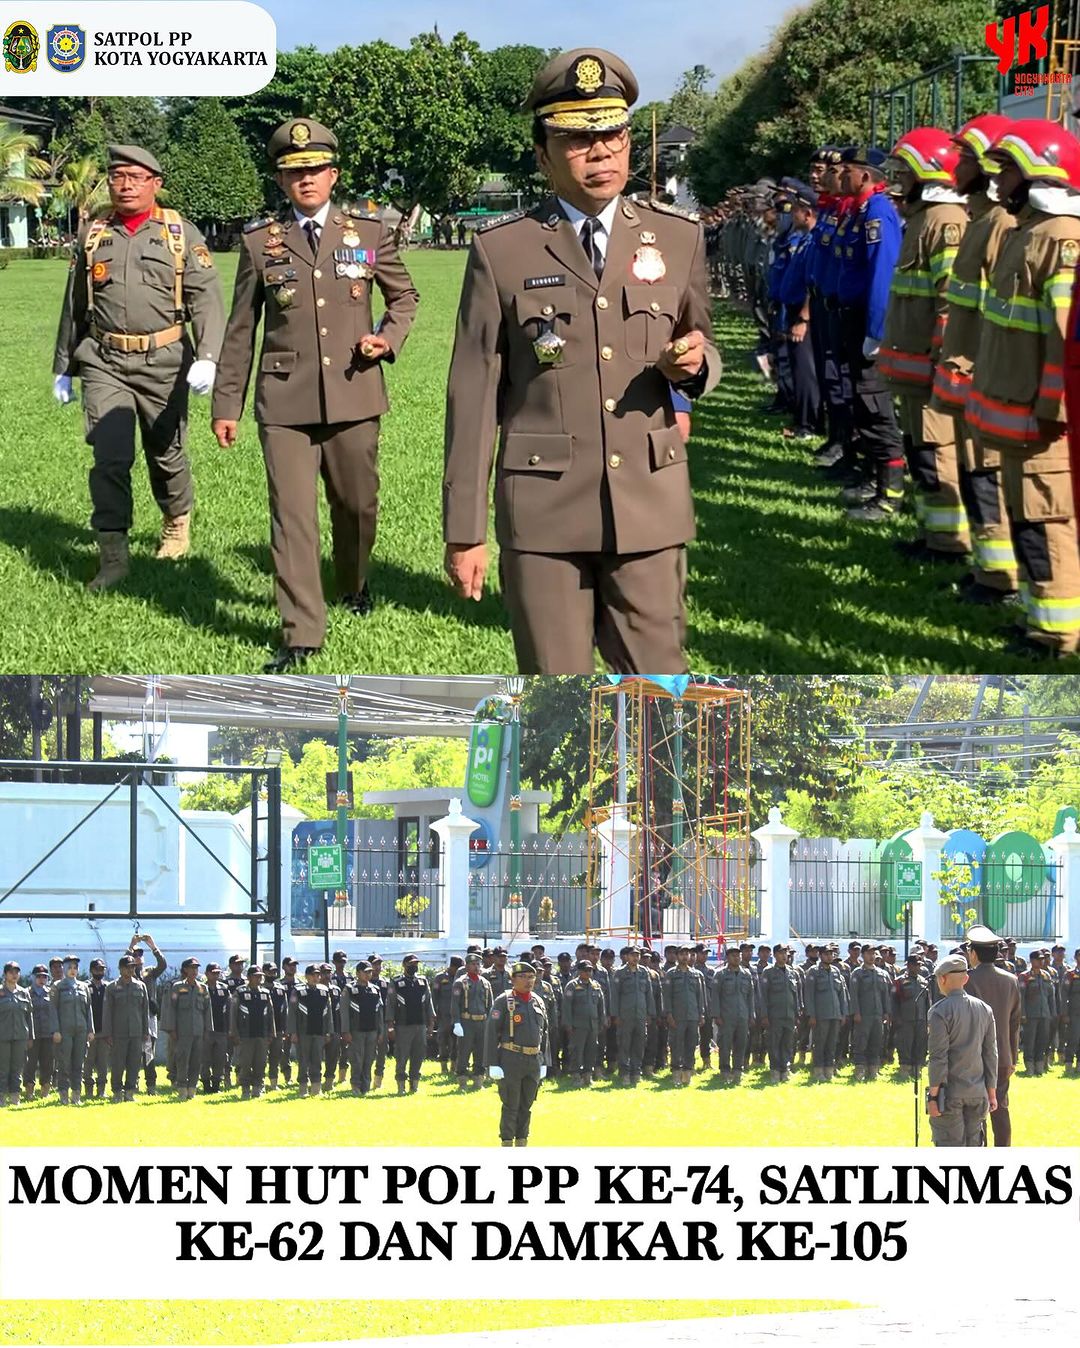 Upacara Hari Ulang Tahun Satpol PP ke-74, Satlinmas ke-62, dan Damkar ke-105 di Lapangan Balaikota Yogyakarta